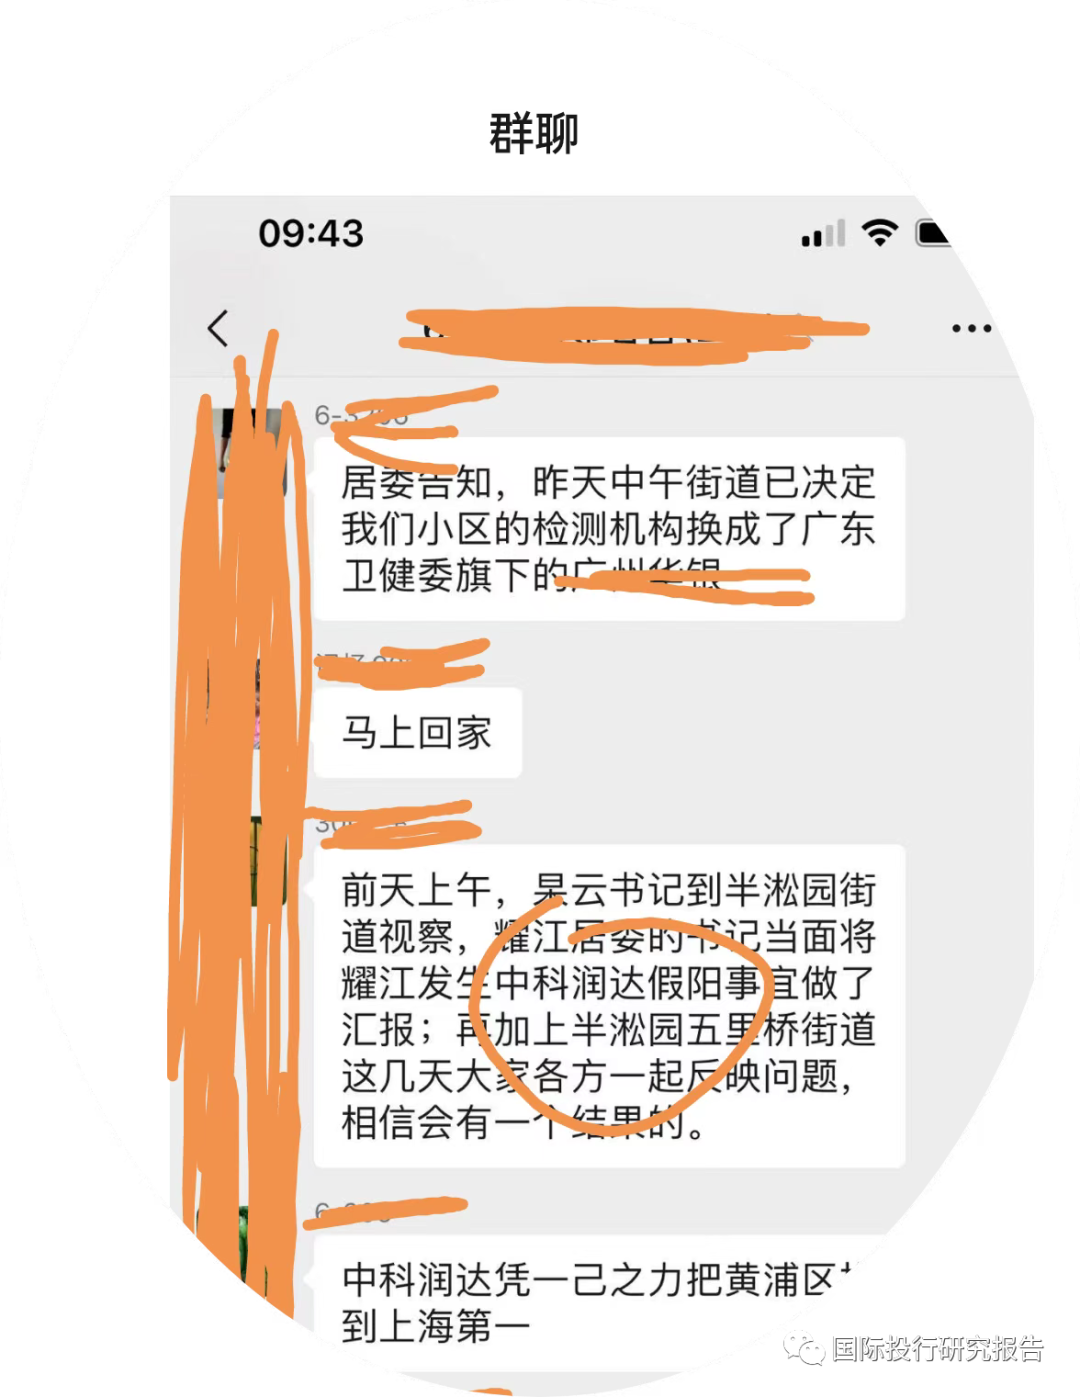 上海豪宅区核酸惊雷：润达医疗（603108.SH）核酸检测多次“误报”阳性多人被拉去方舱  居委会决定立即替换